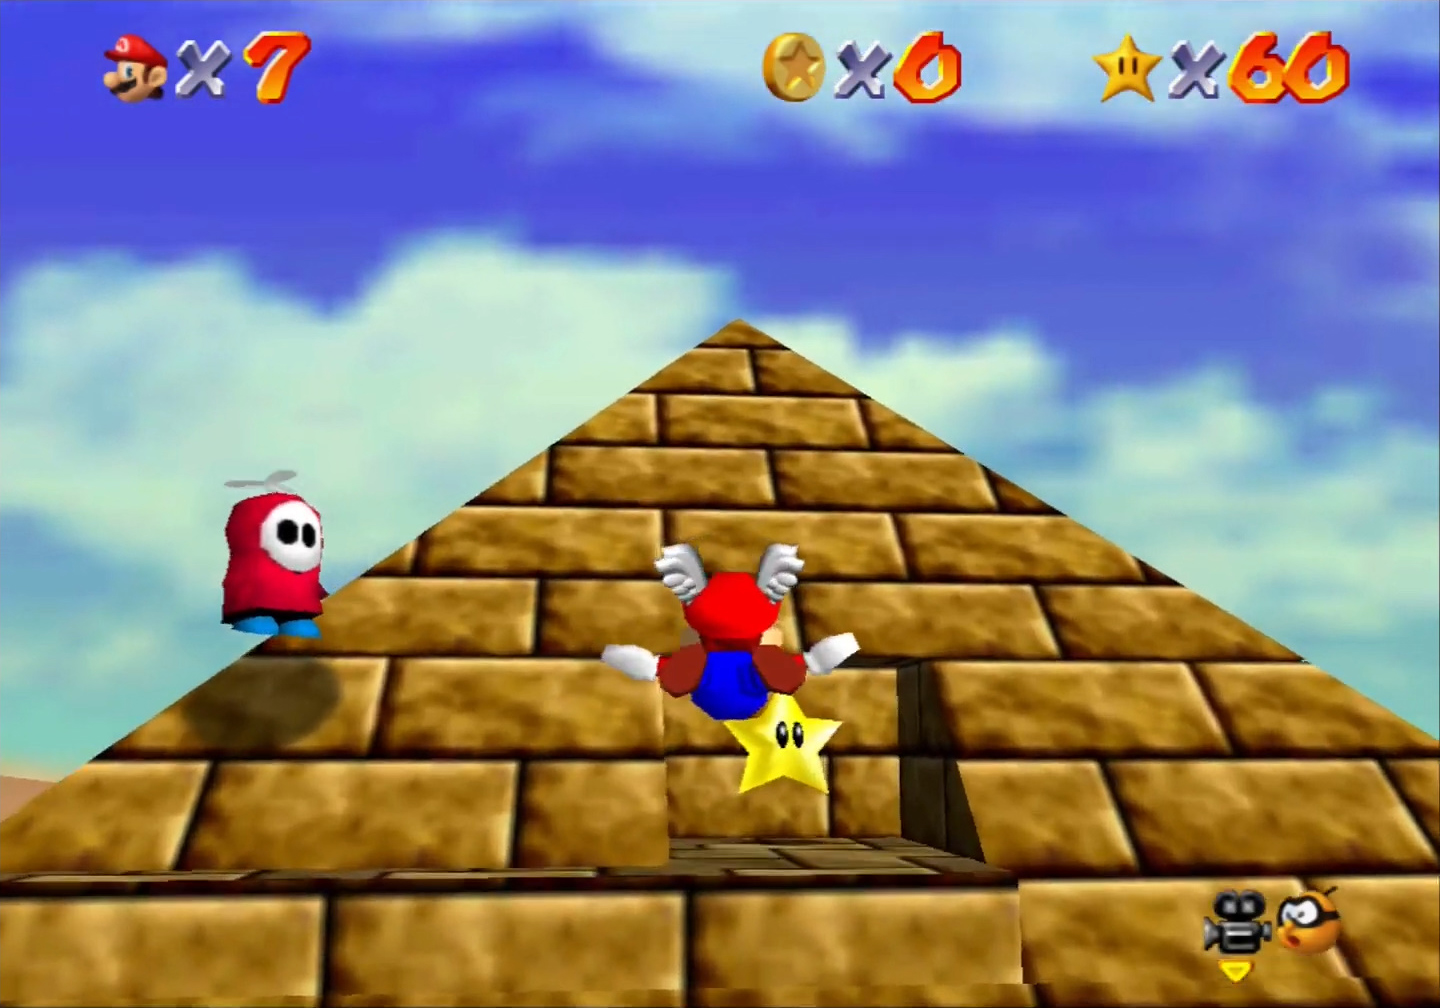 Super Mario 64 - 2. Shining Atop the Pyramid - Shifting Sand Land 3.